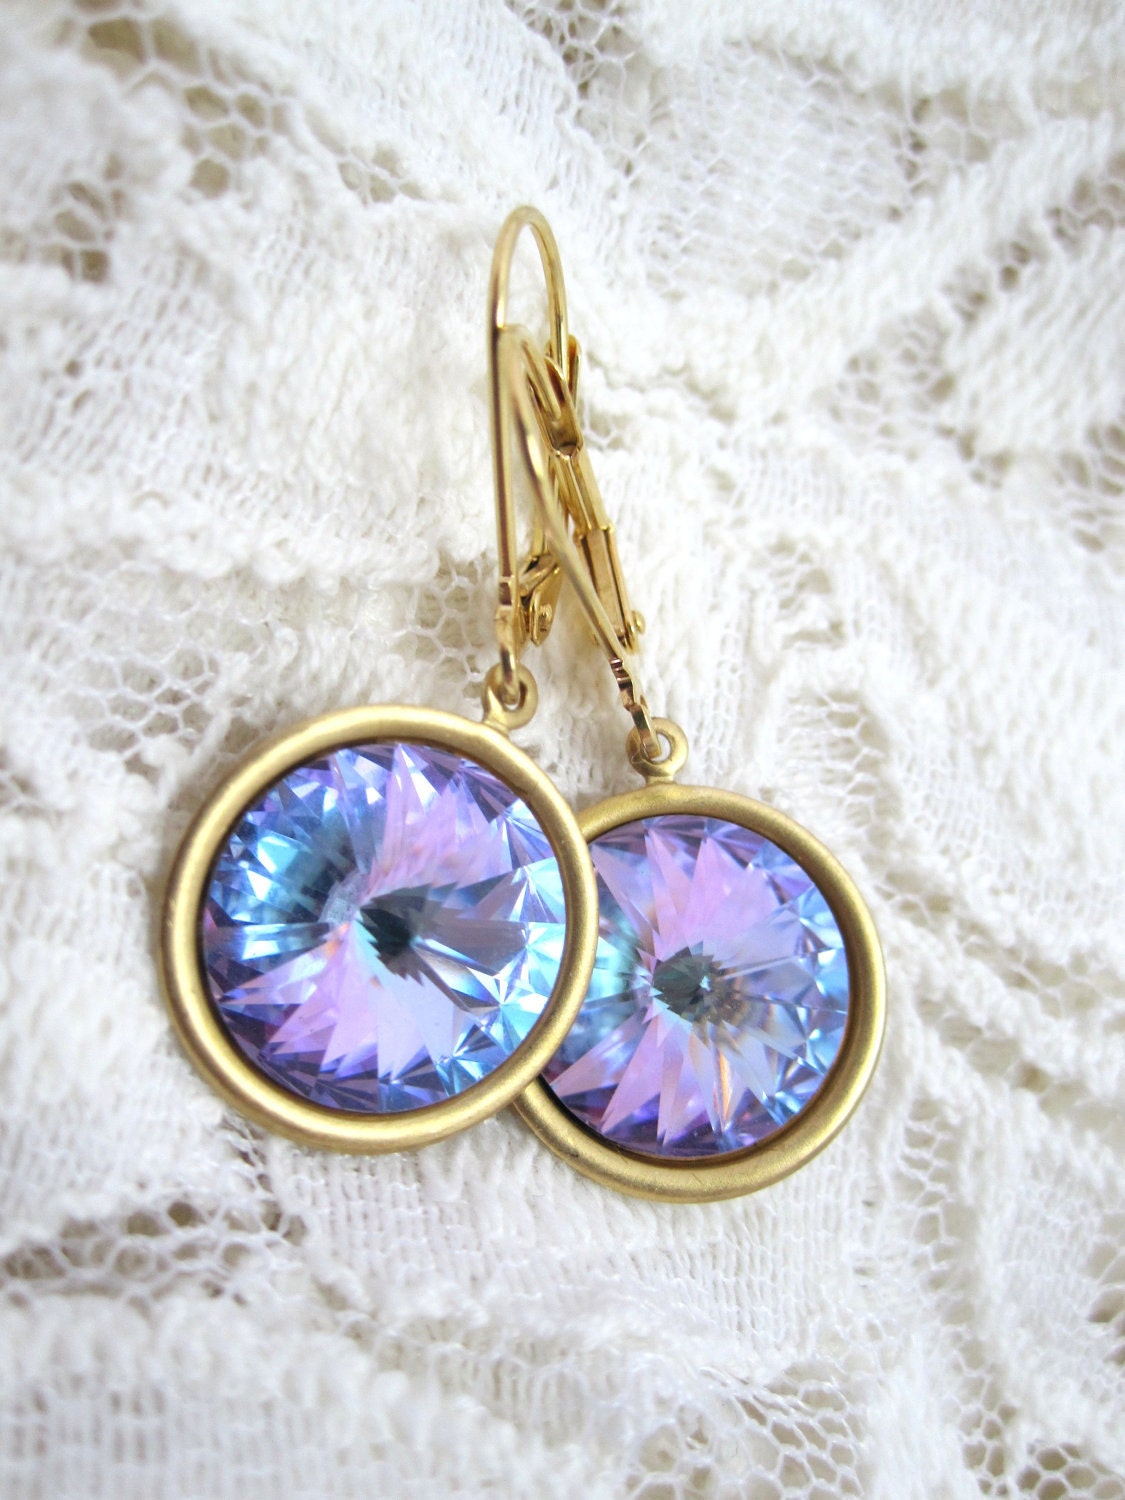 Swarovski vitrail earrings - light lavender vitral rivolis on gold leverbacks - LazyOwlBoutique